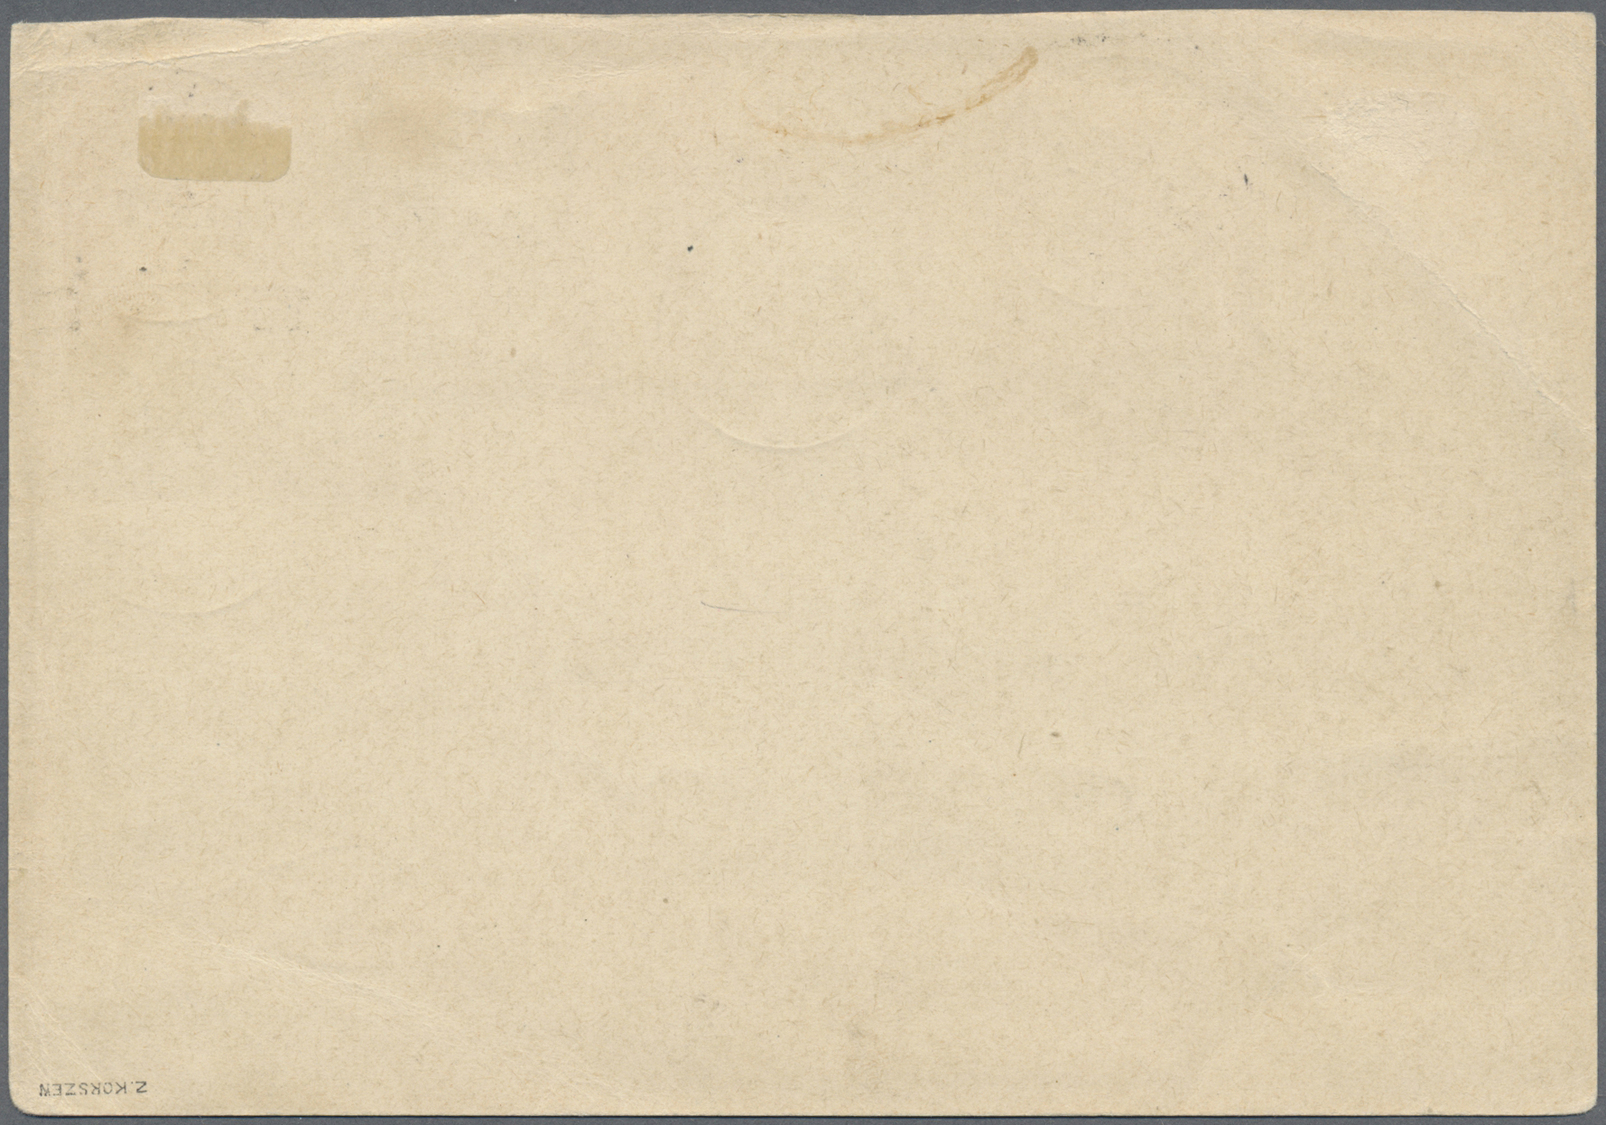 GA Polen: 1944. Postkarte 1. Prov. Ausgabe 25 Gr (Bild U.a. Mit Chopin Am Klavier) Mit Kpl. Satz "Freiheitskämpfe - Lettres & Documents